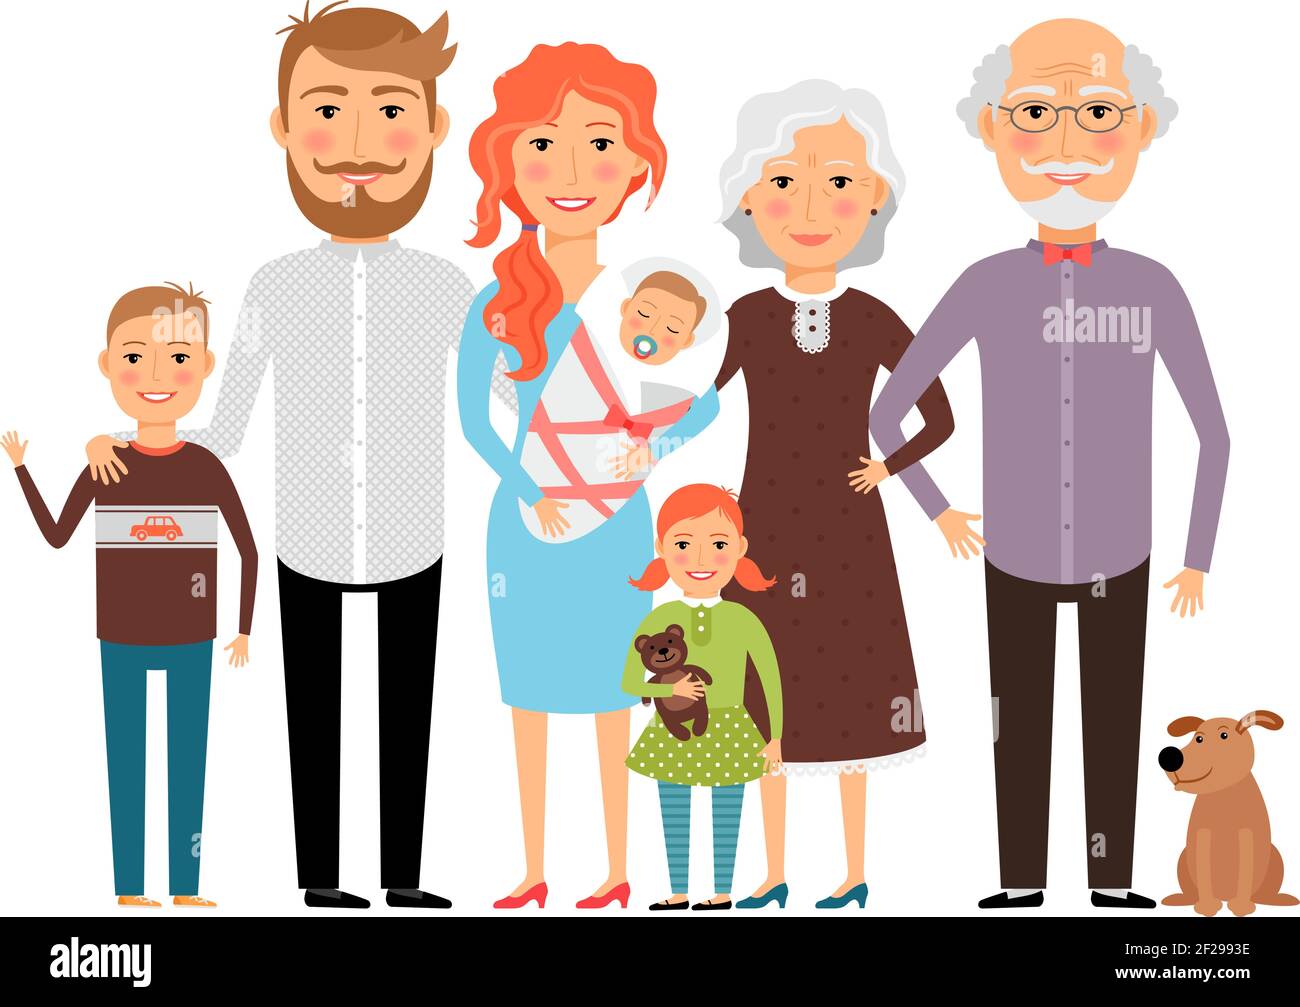 Рисунок семьи с бабушкой и дедушкой